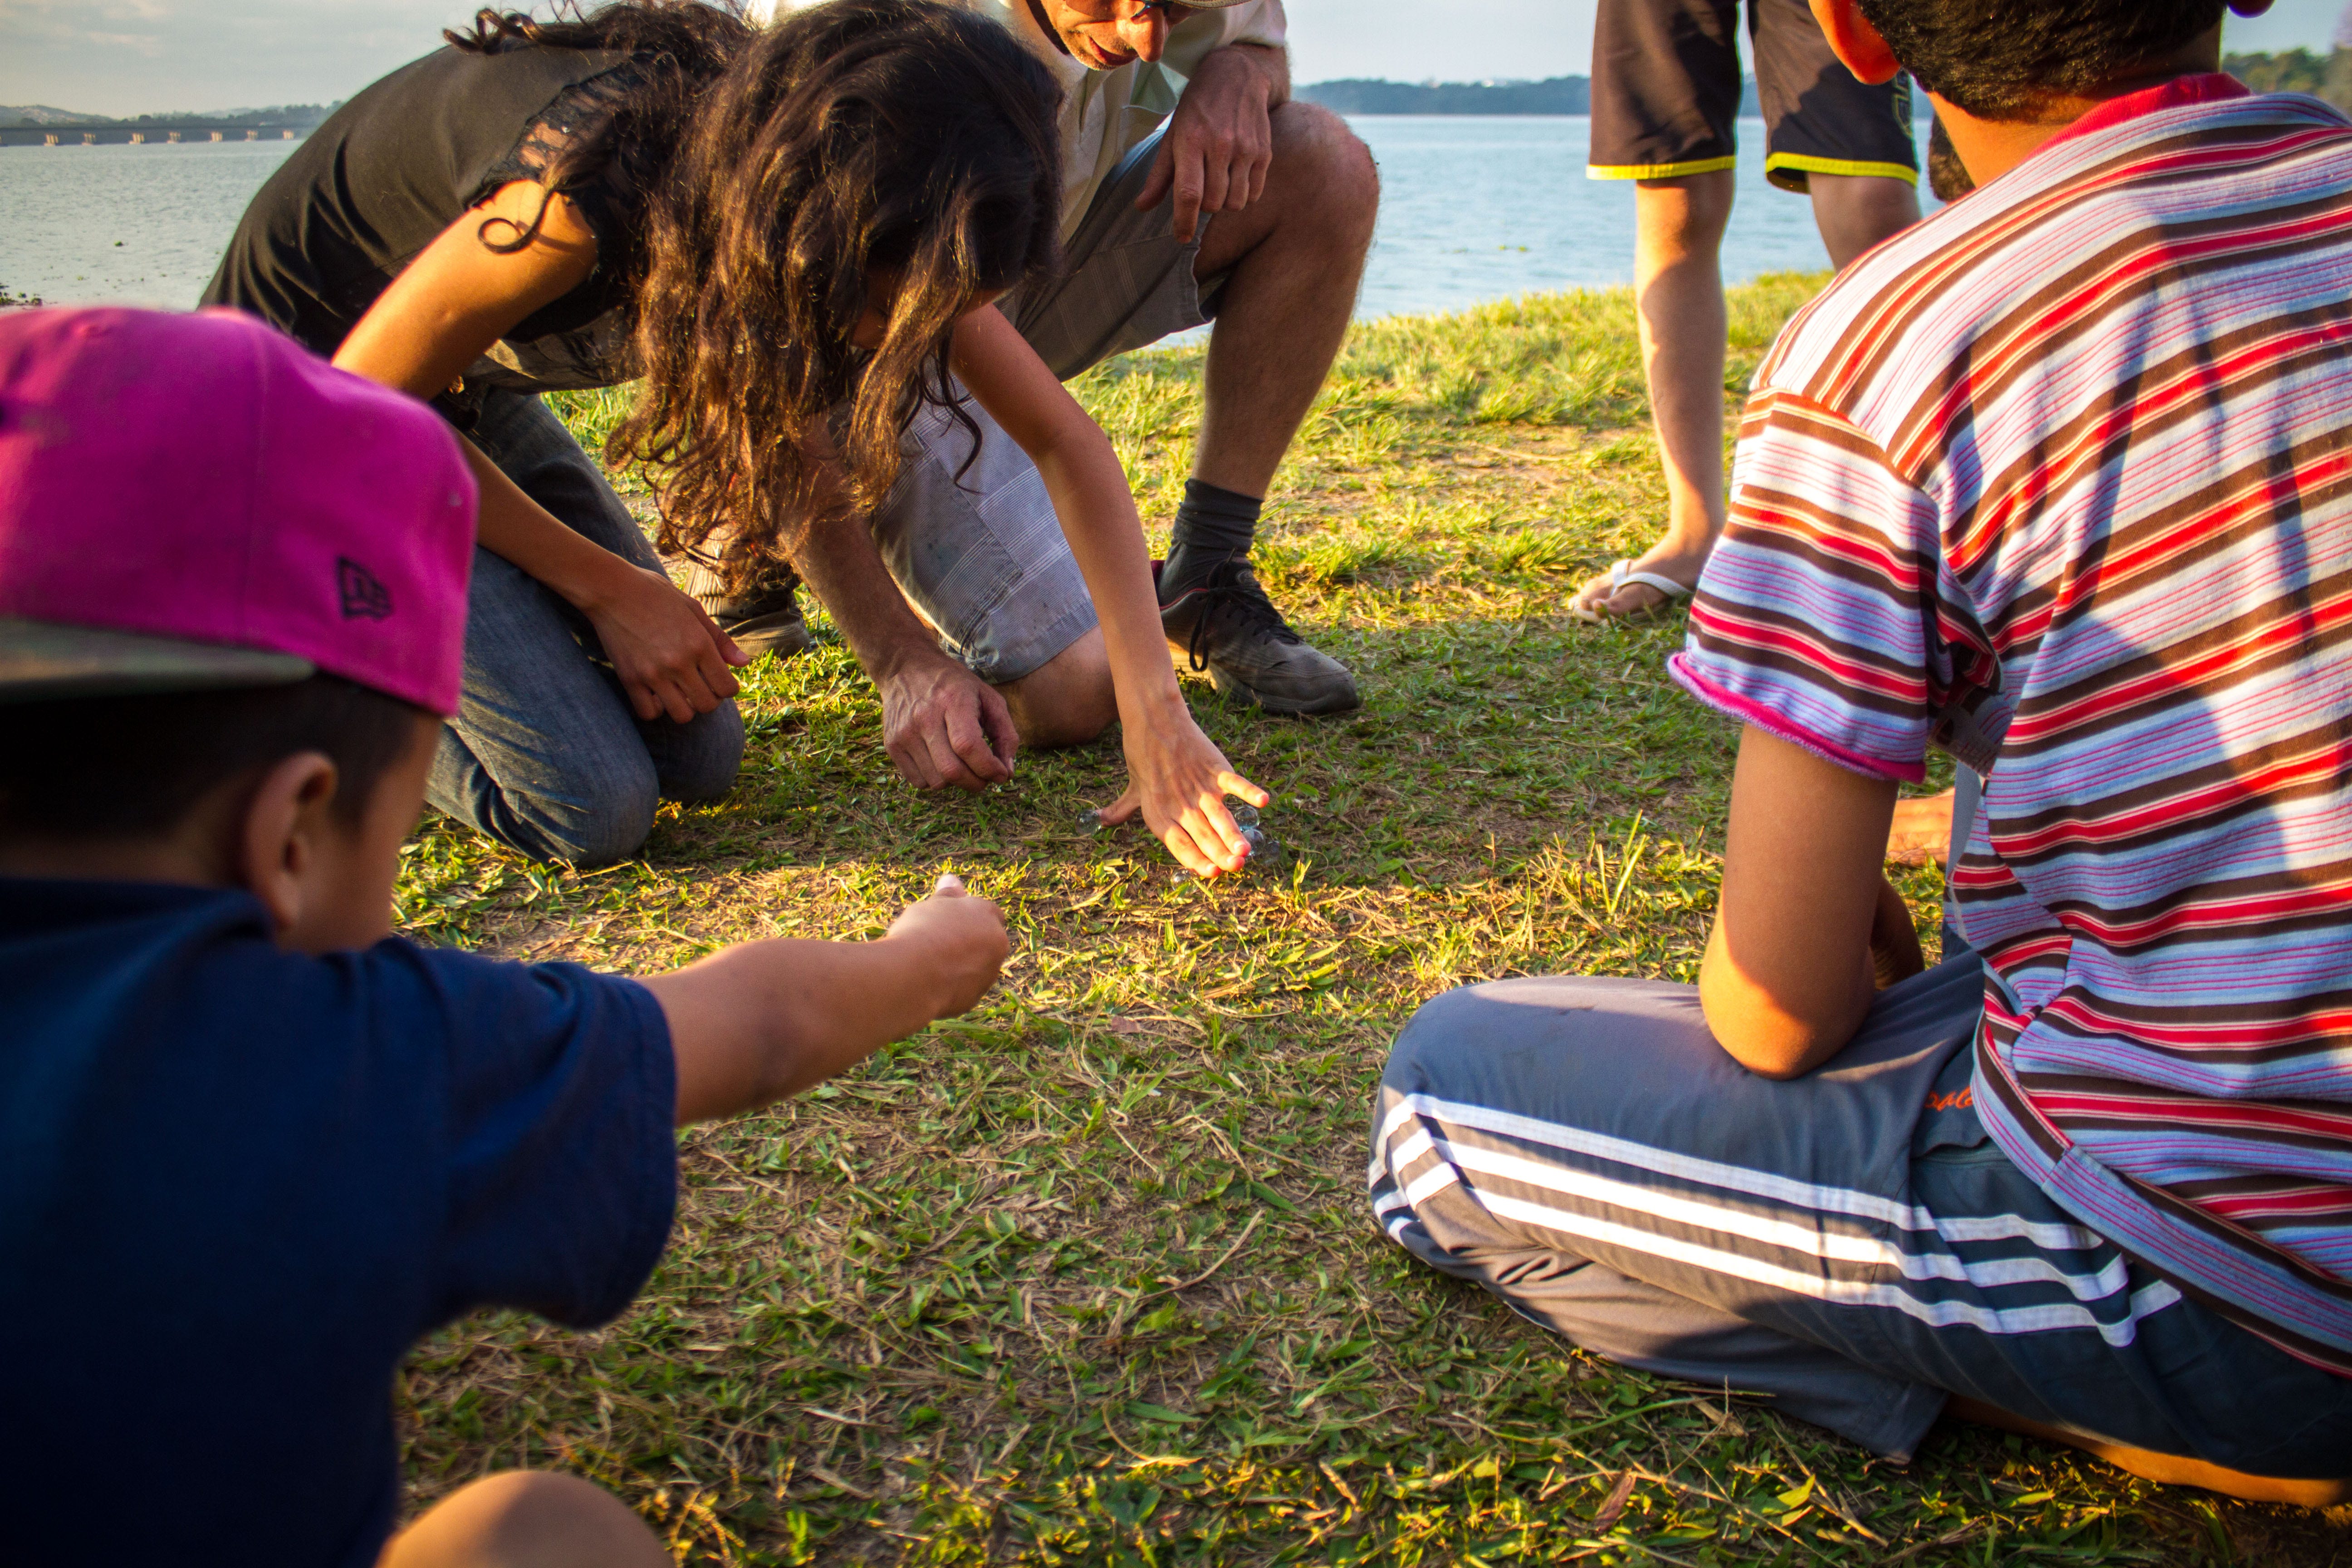 Campeonato de bolinha de gude reúne crianças da Ilha do Bororé, by  Priscila Pacheco, Portfólio Priscila Pacheco